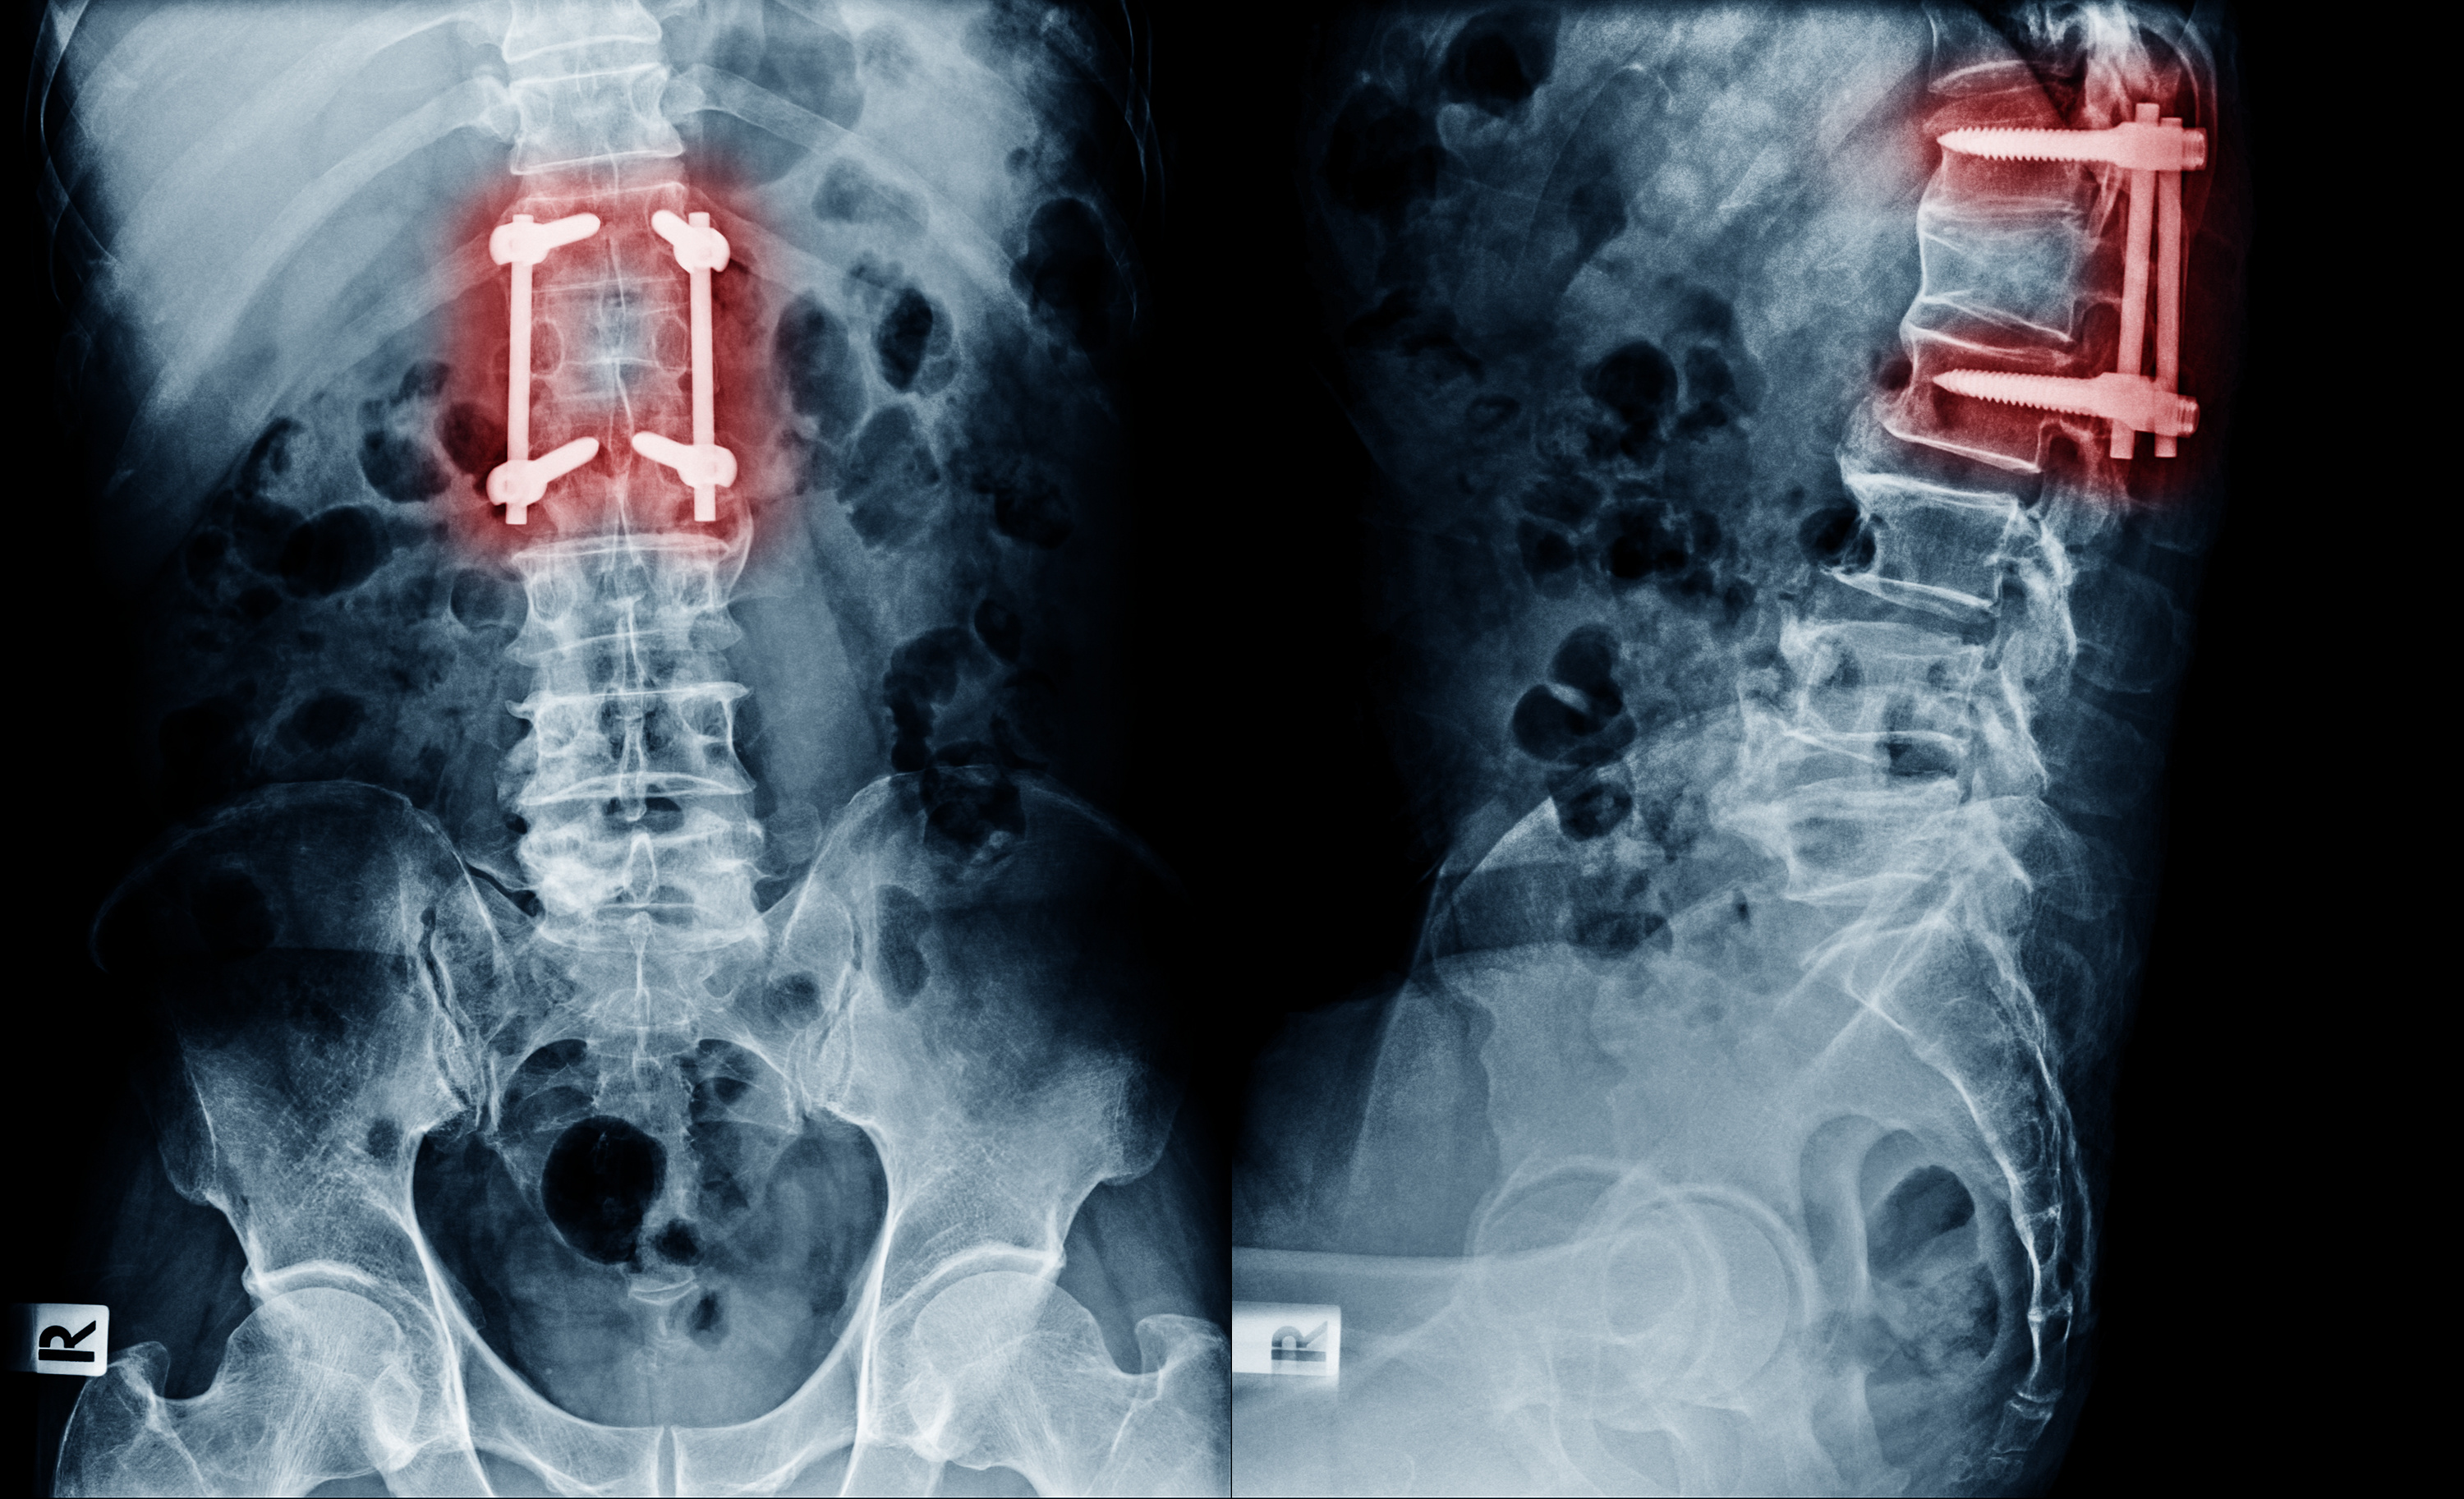 Des implants intelligents, auto-alimentés permettent de surveiller la guérison de lésions et troubles de la colonne vertébrale (Visuel Adobe stock 214542321)